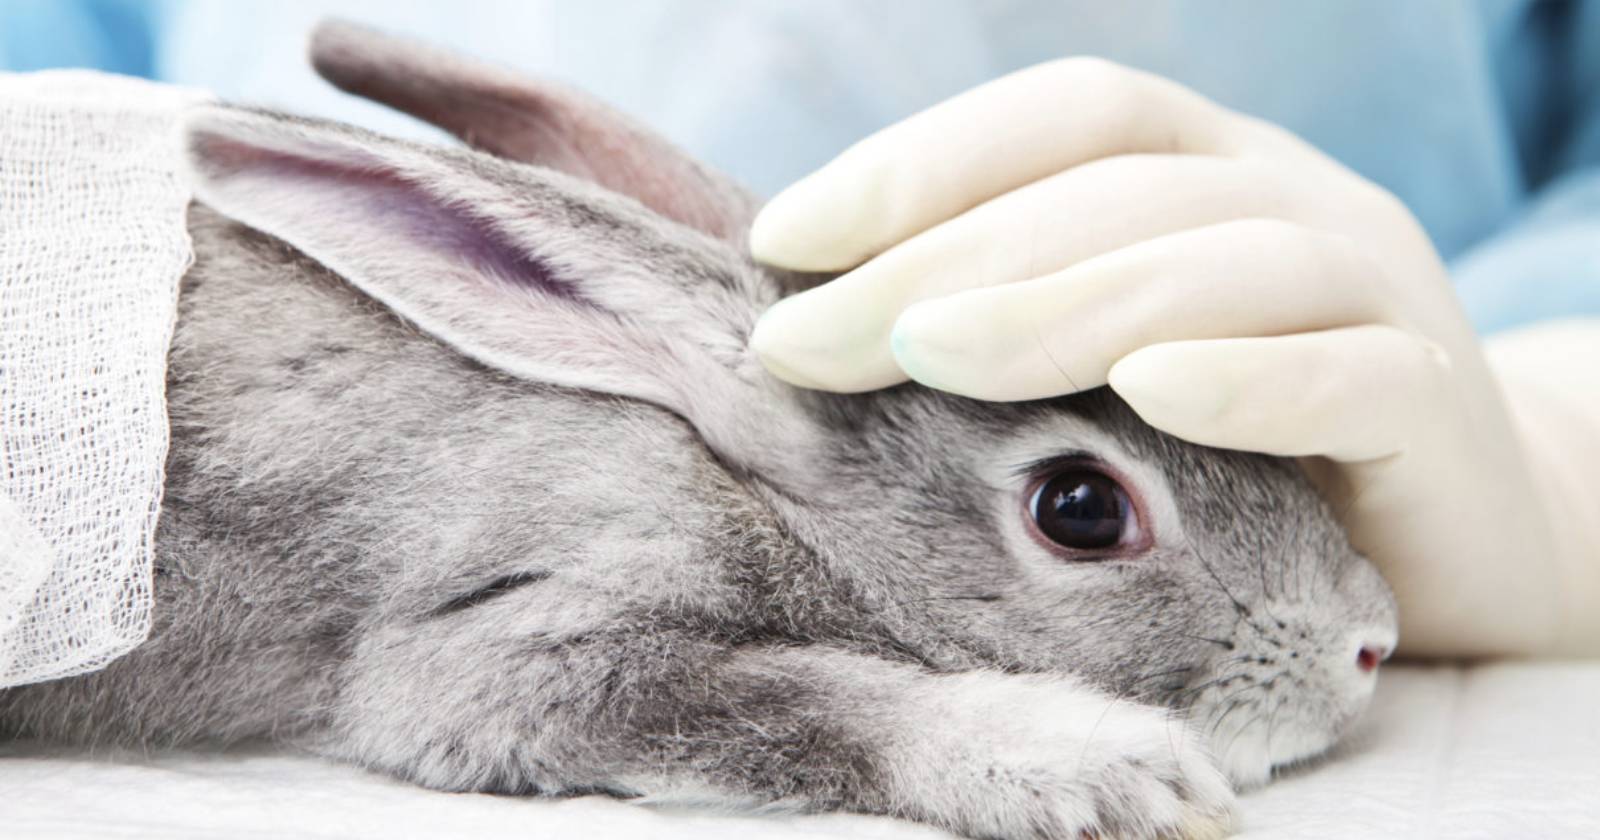 pruebas cosméticas en animales